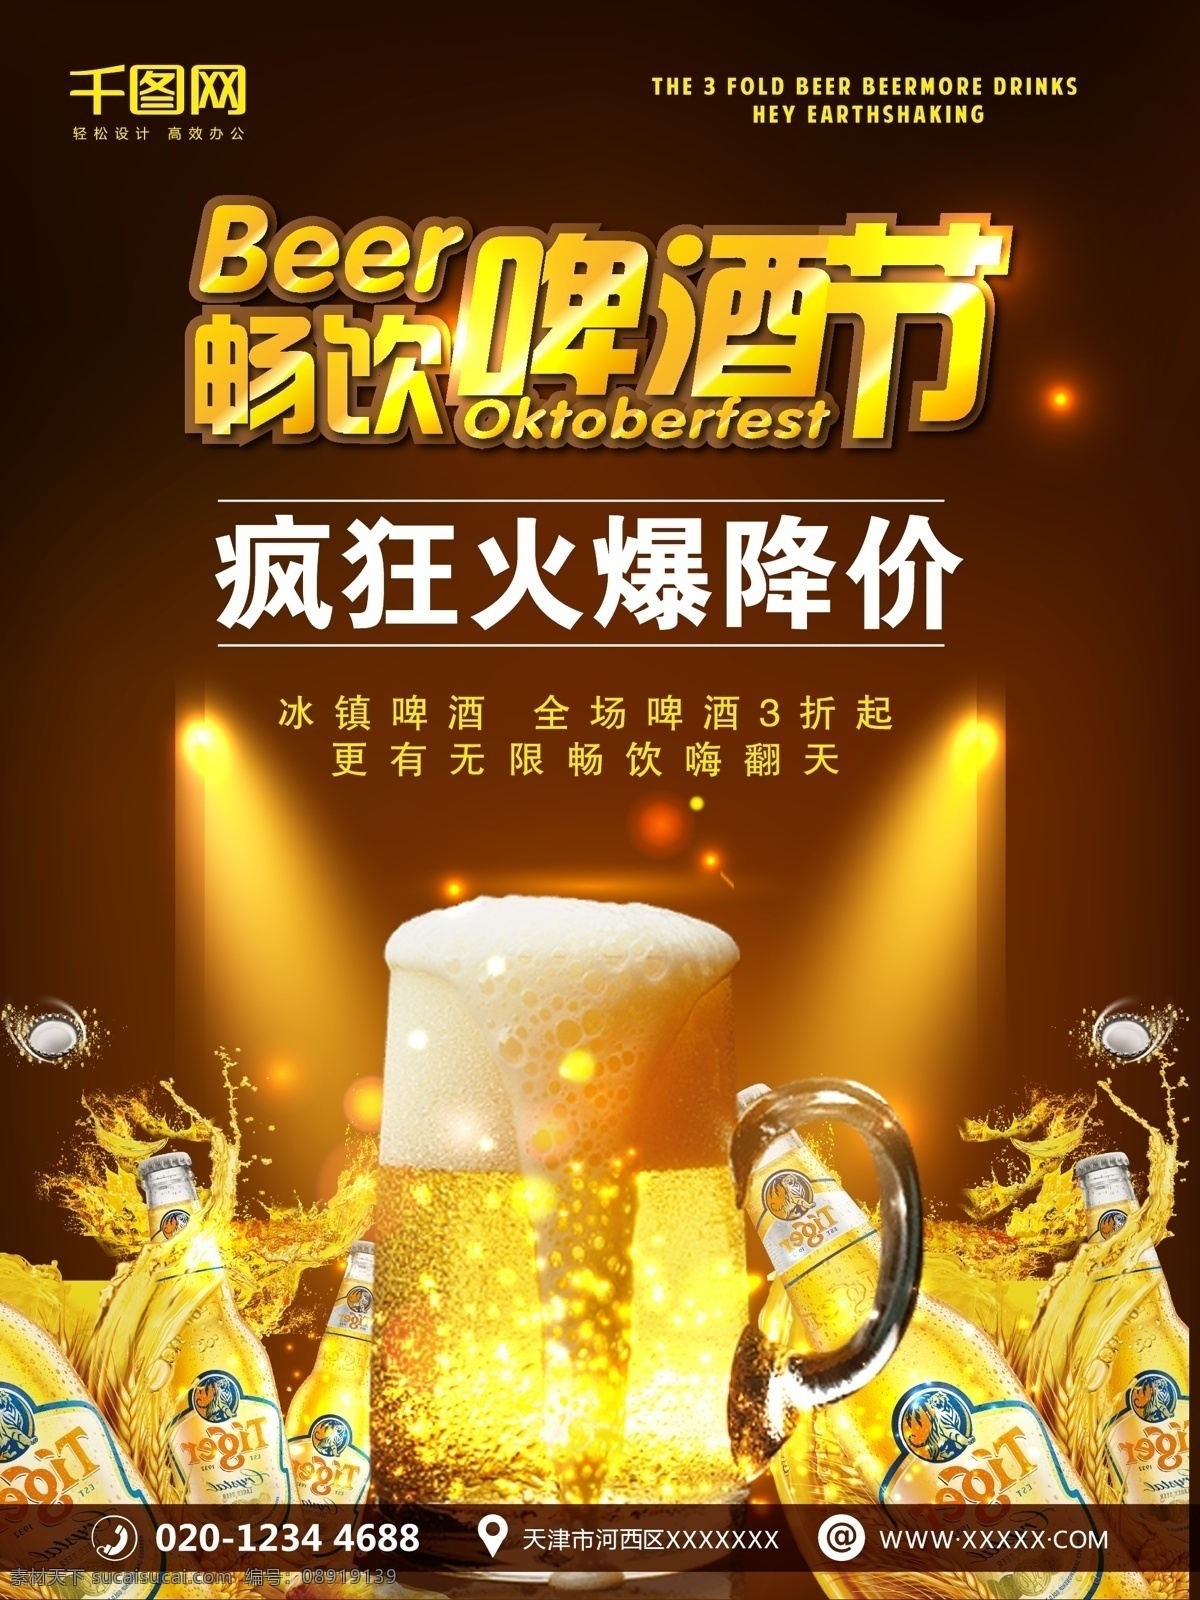 啤酒节 啤酒 酒吧 促销 宣传海报 模板 海报模板 啤酒海报 海报背景 酒吧海报 海报 啤酒节海报 酒吧广告 酒吧素材